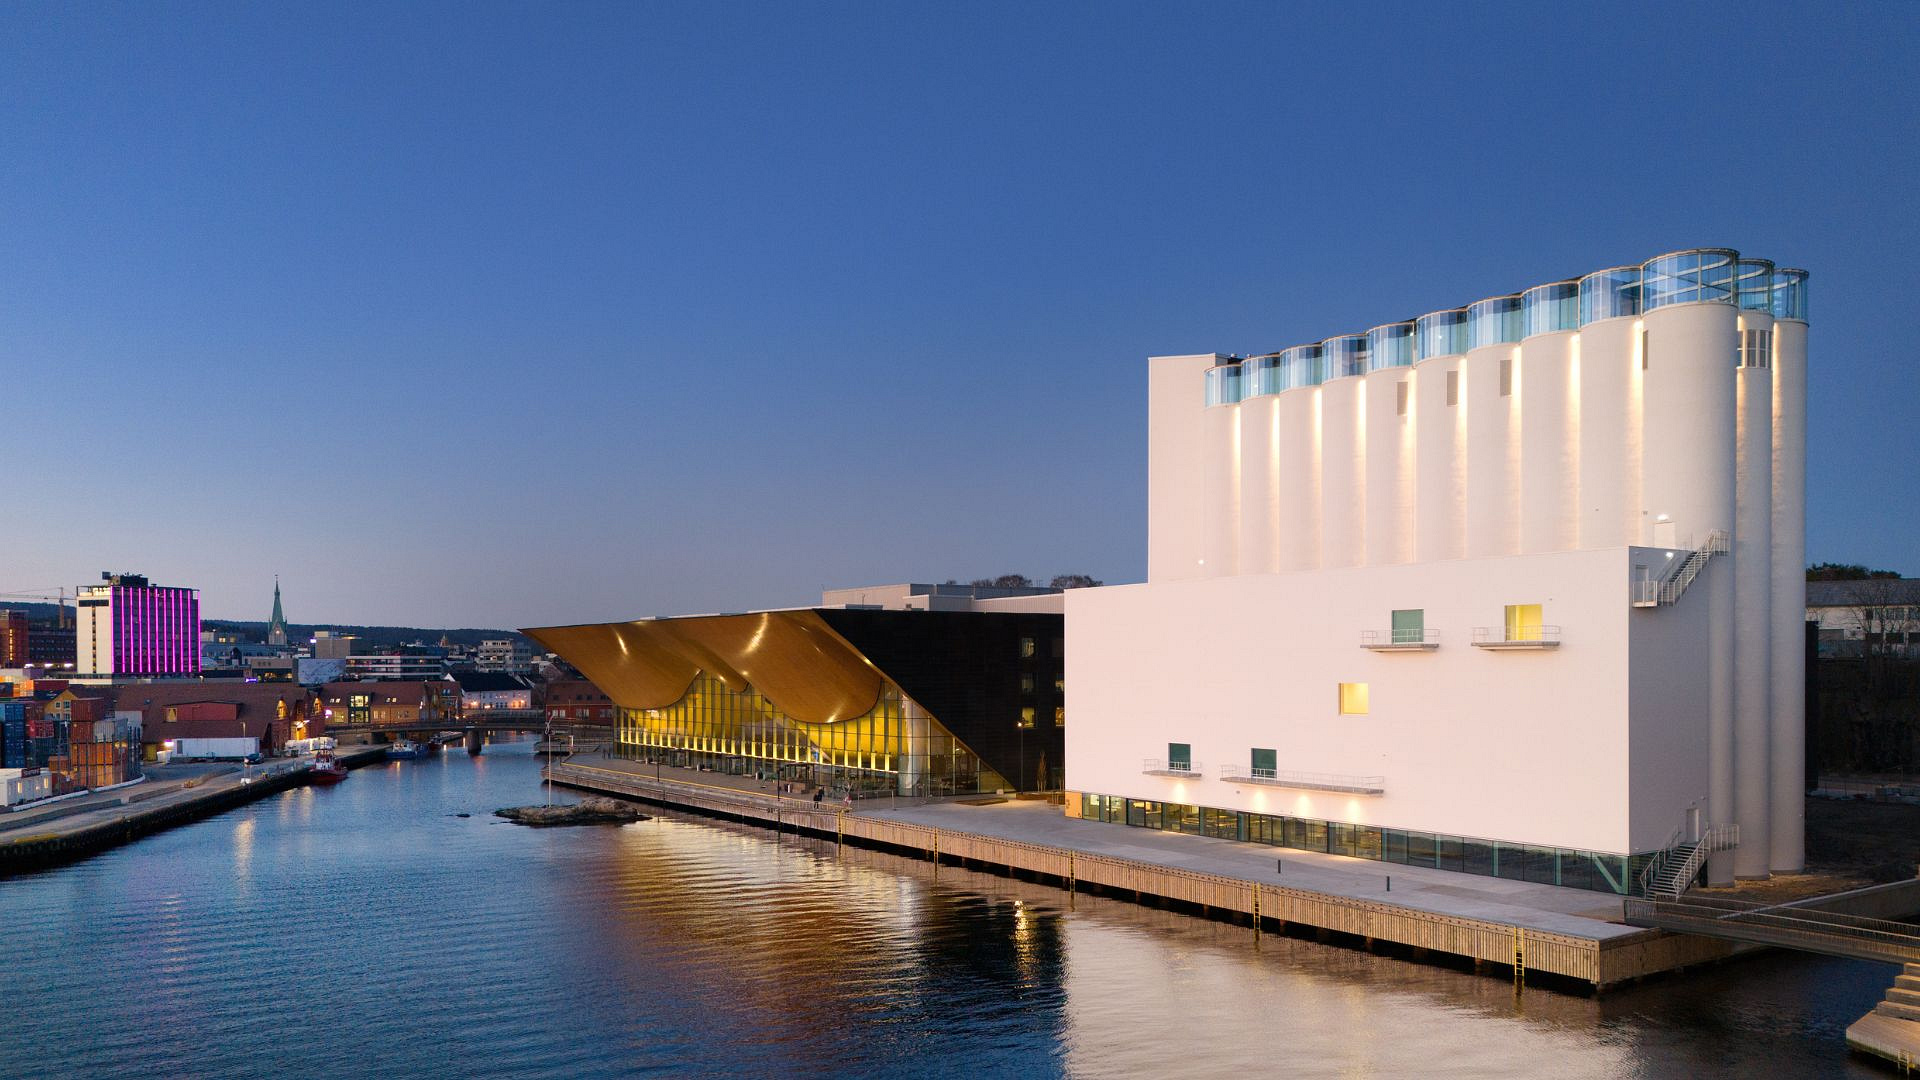 Największe muzeum ze sztuką nordycką otwiera się w Norwegii. Siedzibą - zabytkowy silos